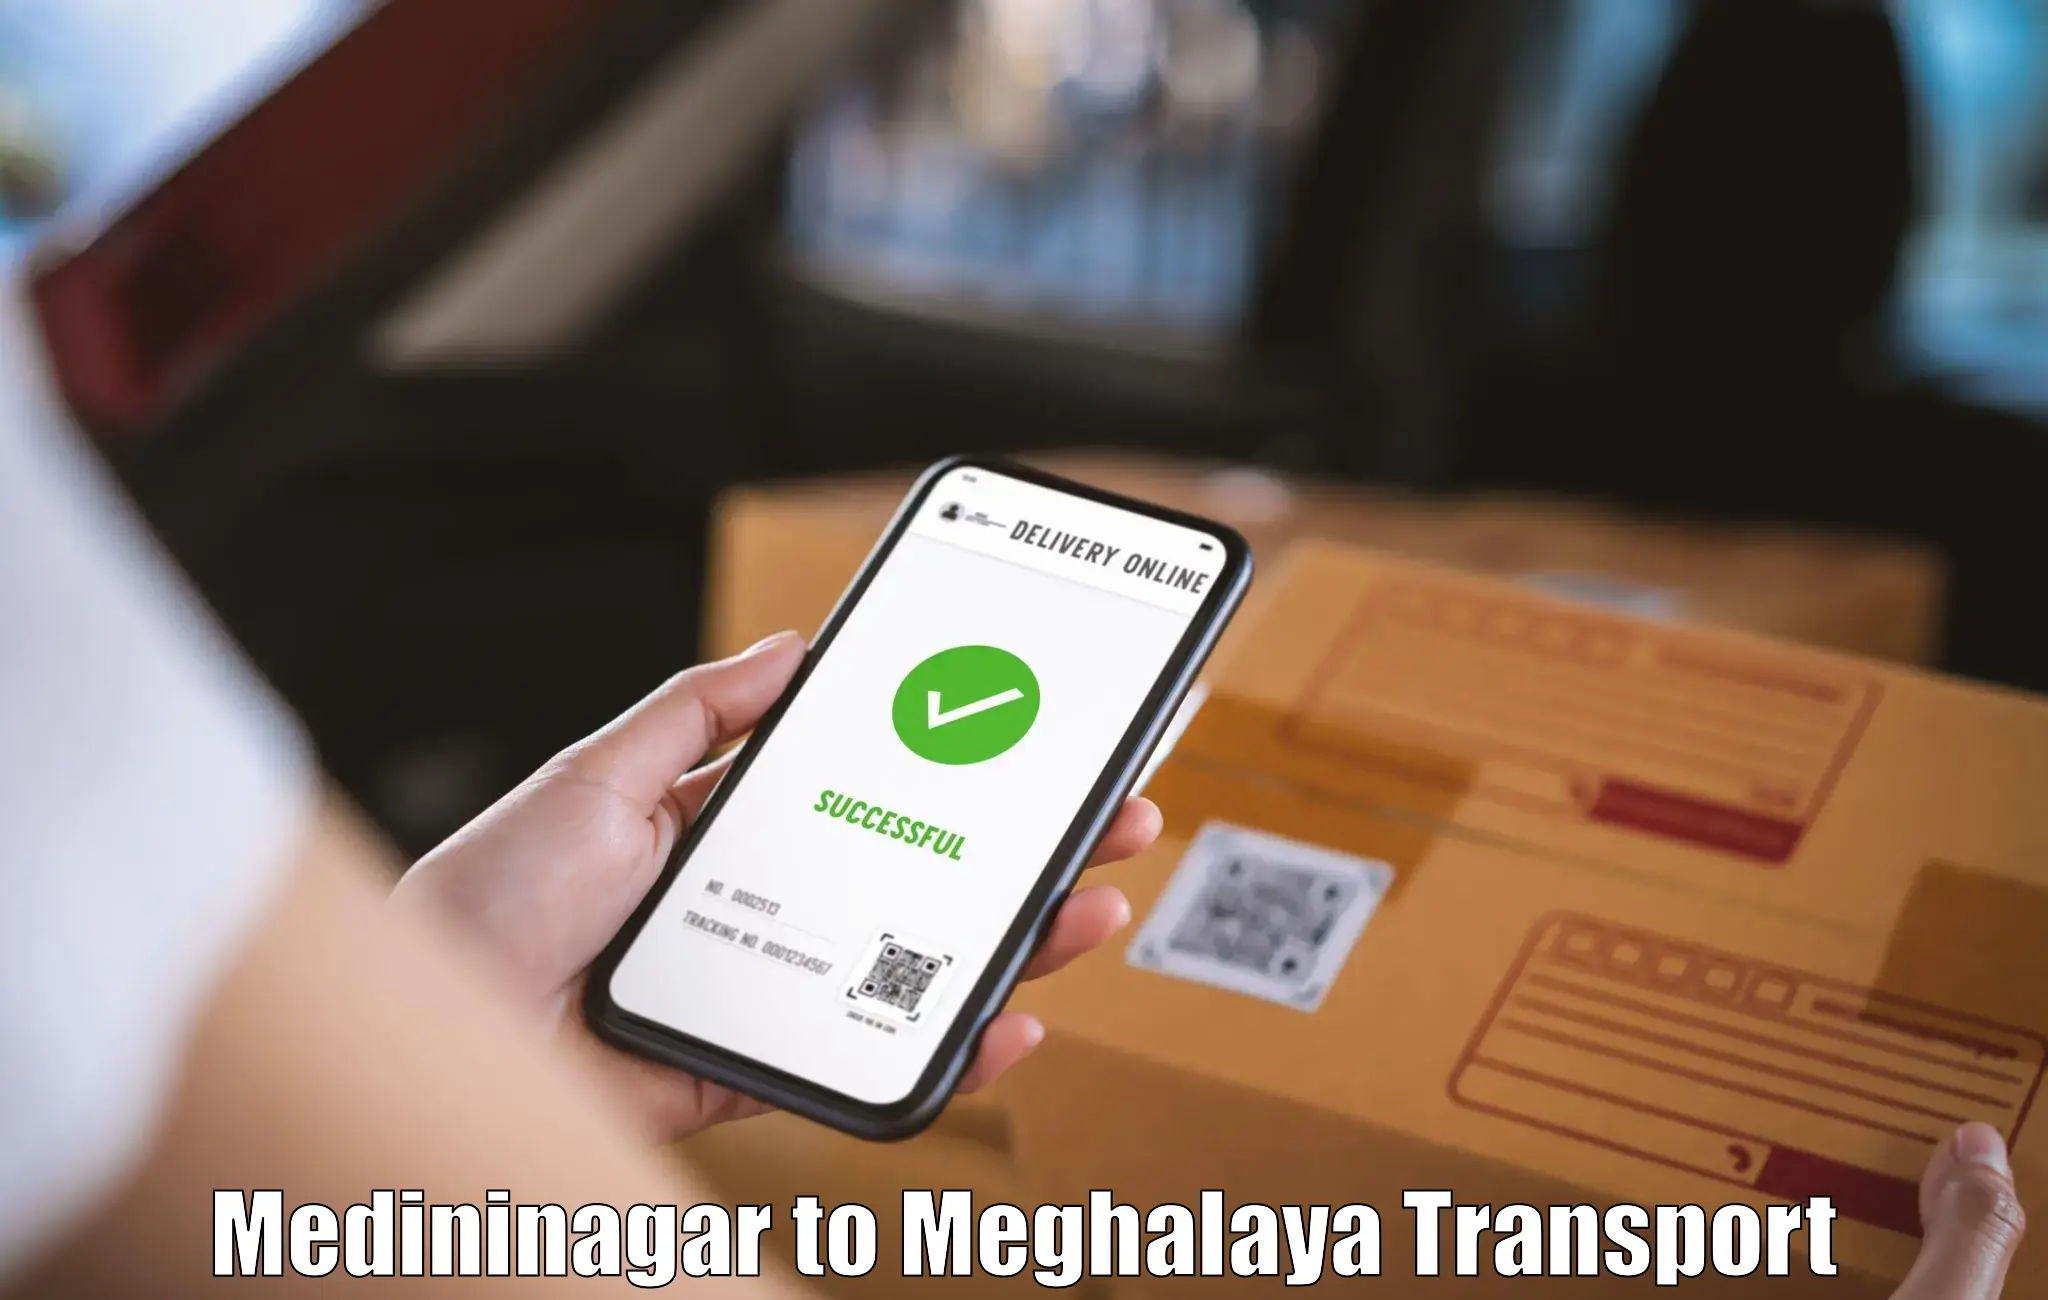 Logistics transportation services Medininagar to Umsaw